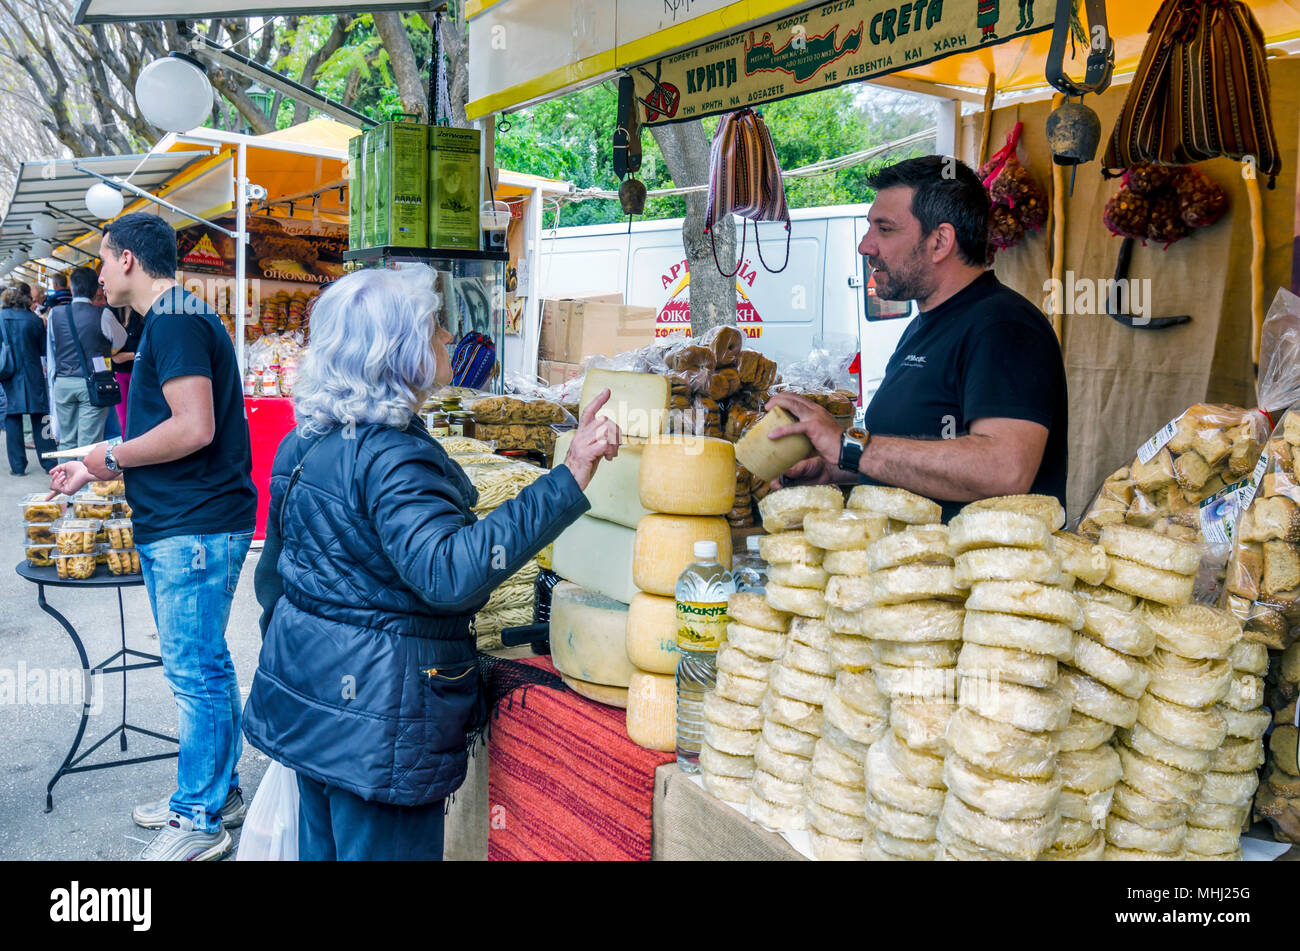 Atene, Attica / Grecia. Esposizione di prodotti cretesi in Zappeion. Le persone vendono e comprano cretesi tradizionali prodotti come l'olio d'oliva, formaggi, ecc. Foto Stock